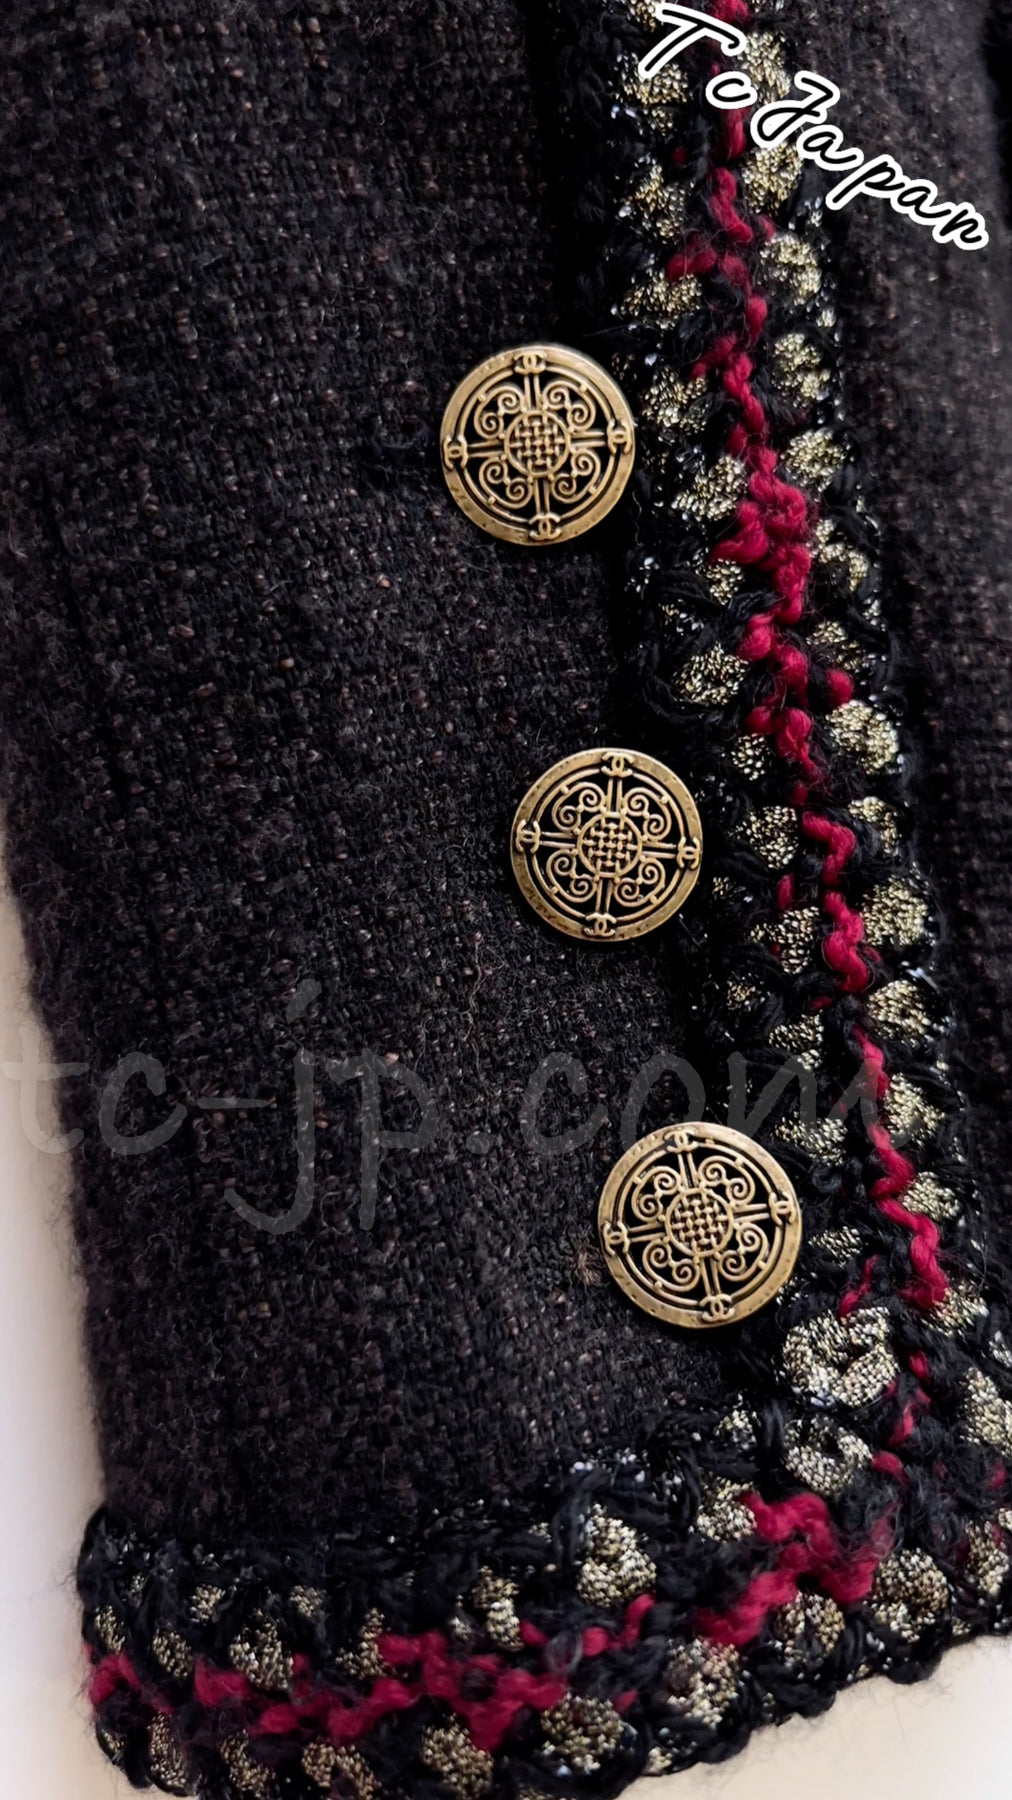 CHANEL 10PF Trimming Wool coat Dress 40 42 シャネル スタンドカラー・トリミング・ダブル・ウール・コート・ワンピース 即発 - TC JAPAN